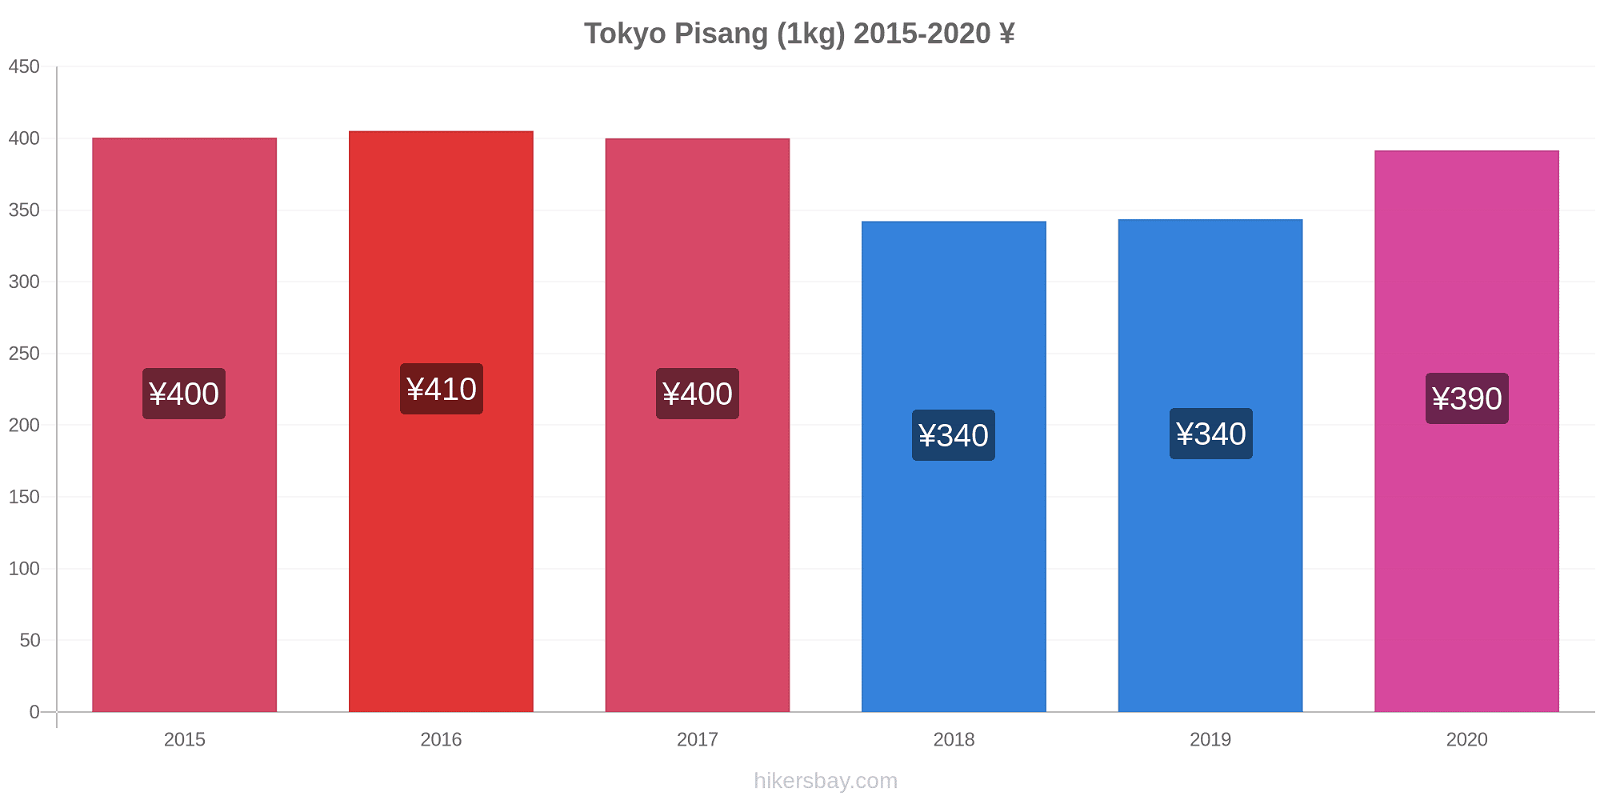 Tokyo perubahan harga Pisang (1kg) hikersbay.com